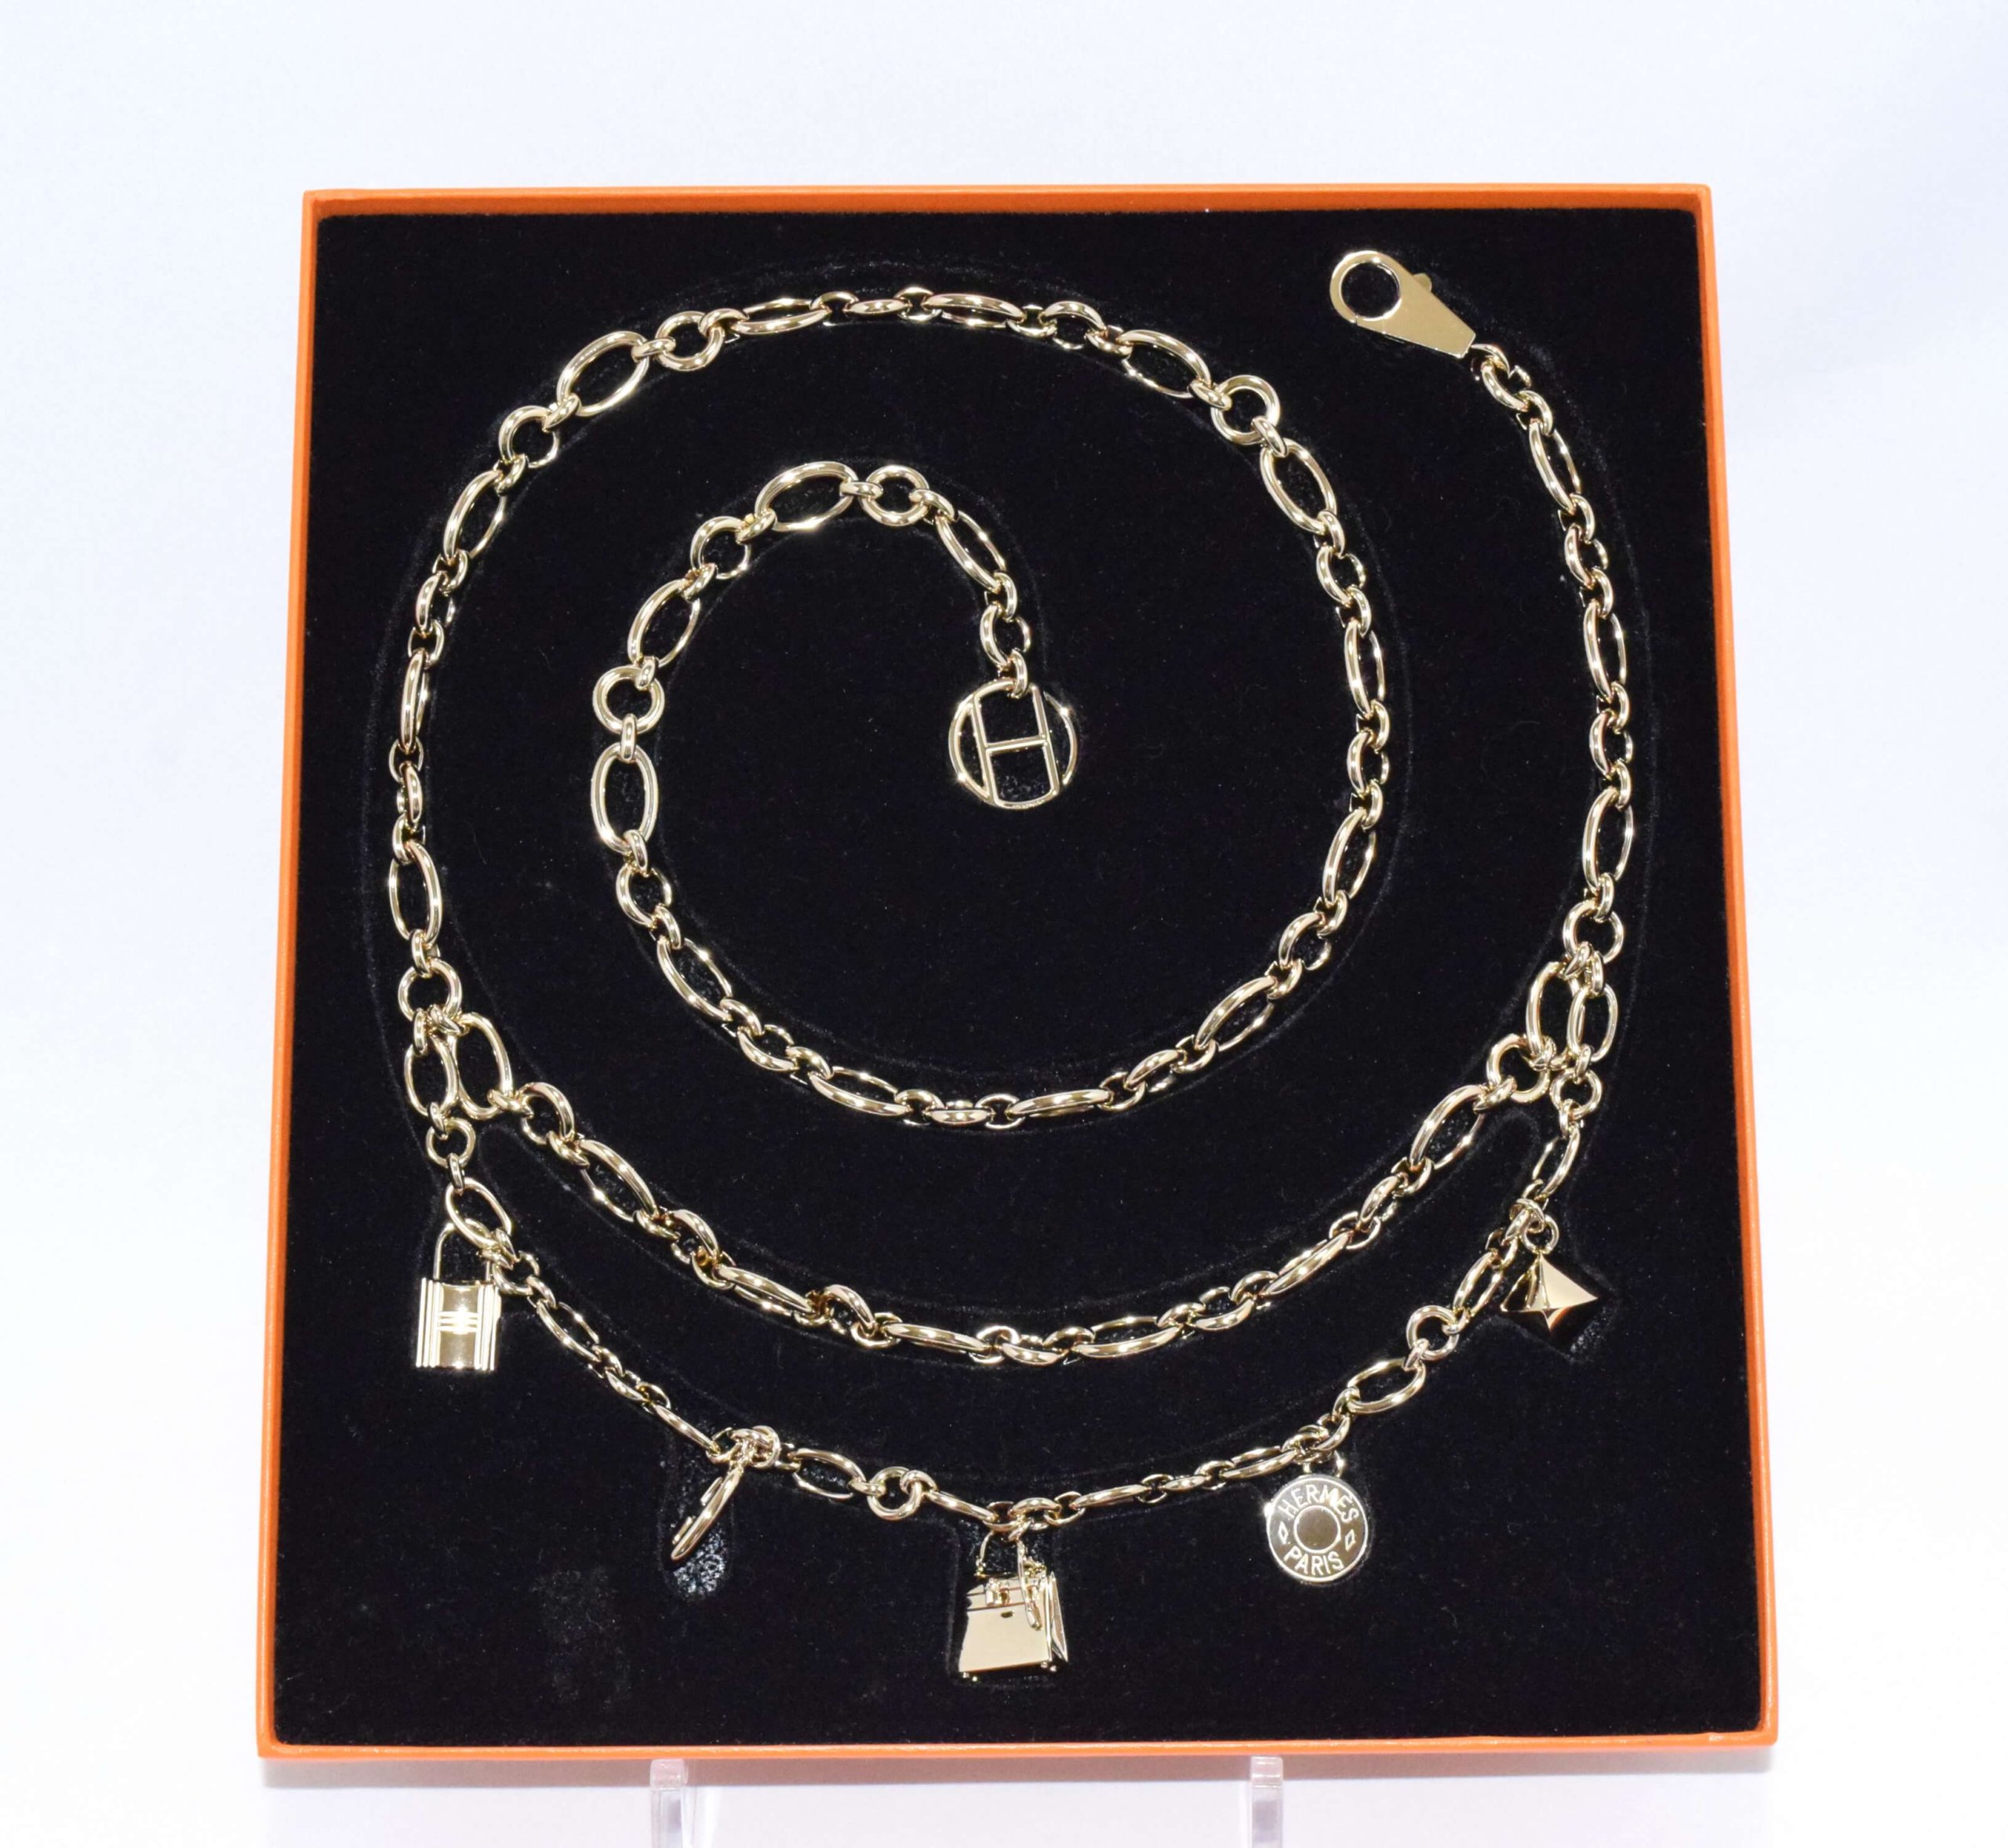 Hermes Gold Breloque Olga bag charm amulette Cadena berloque 0481